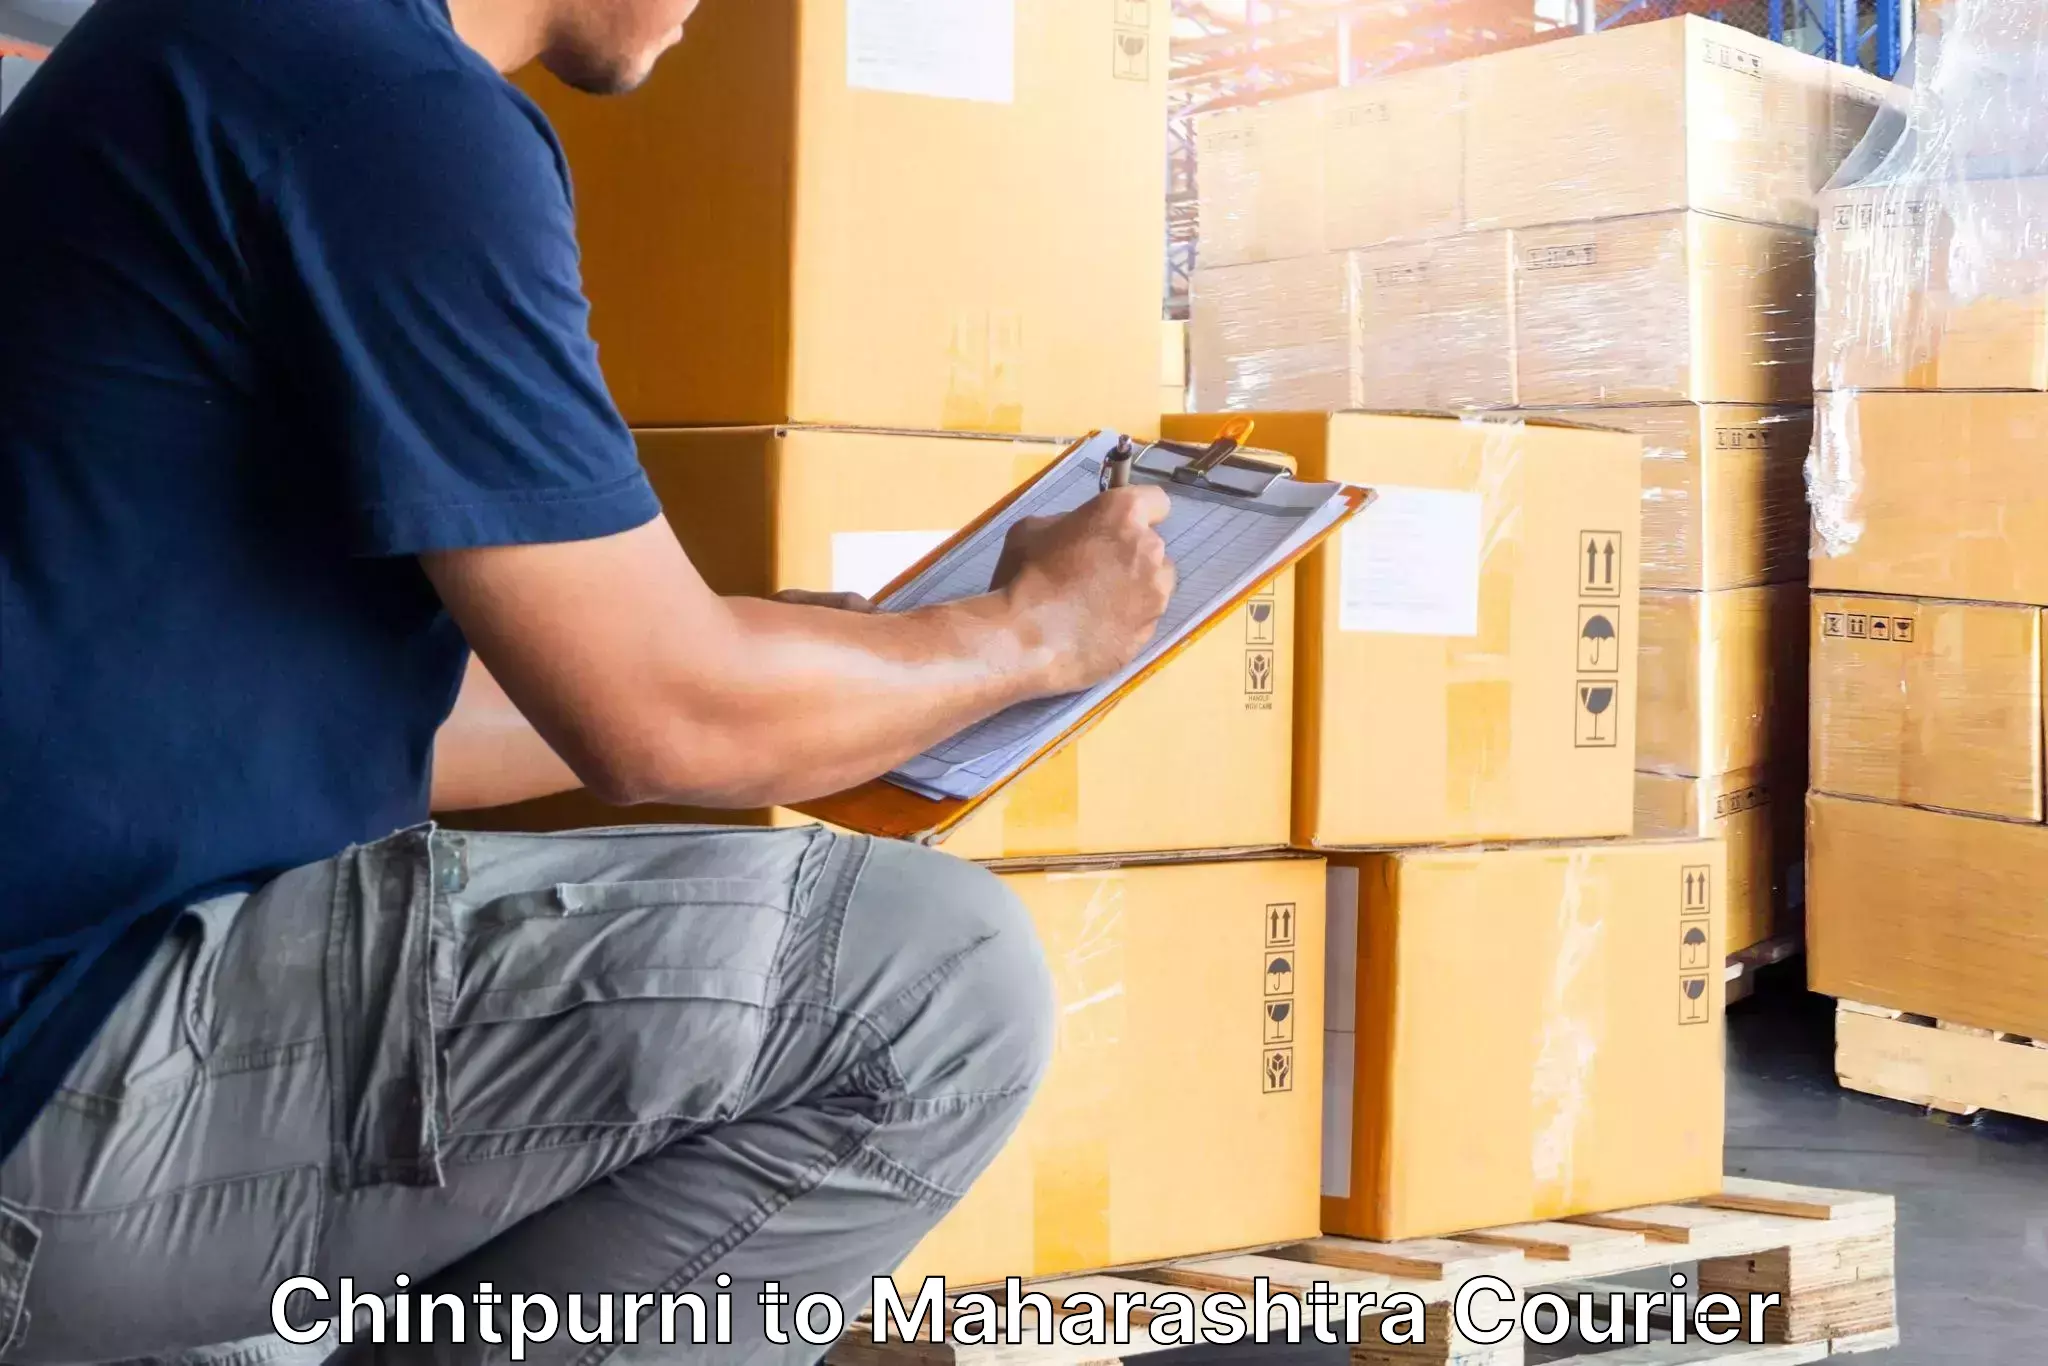 Furniture transport specialists Chintpurni to Akluj